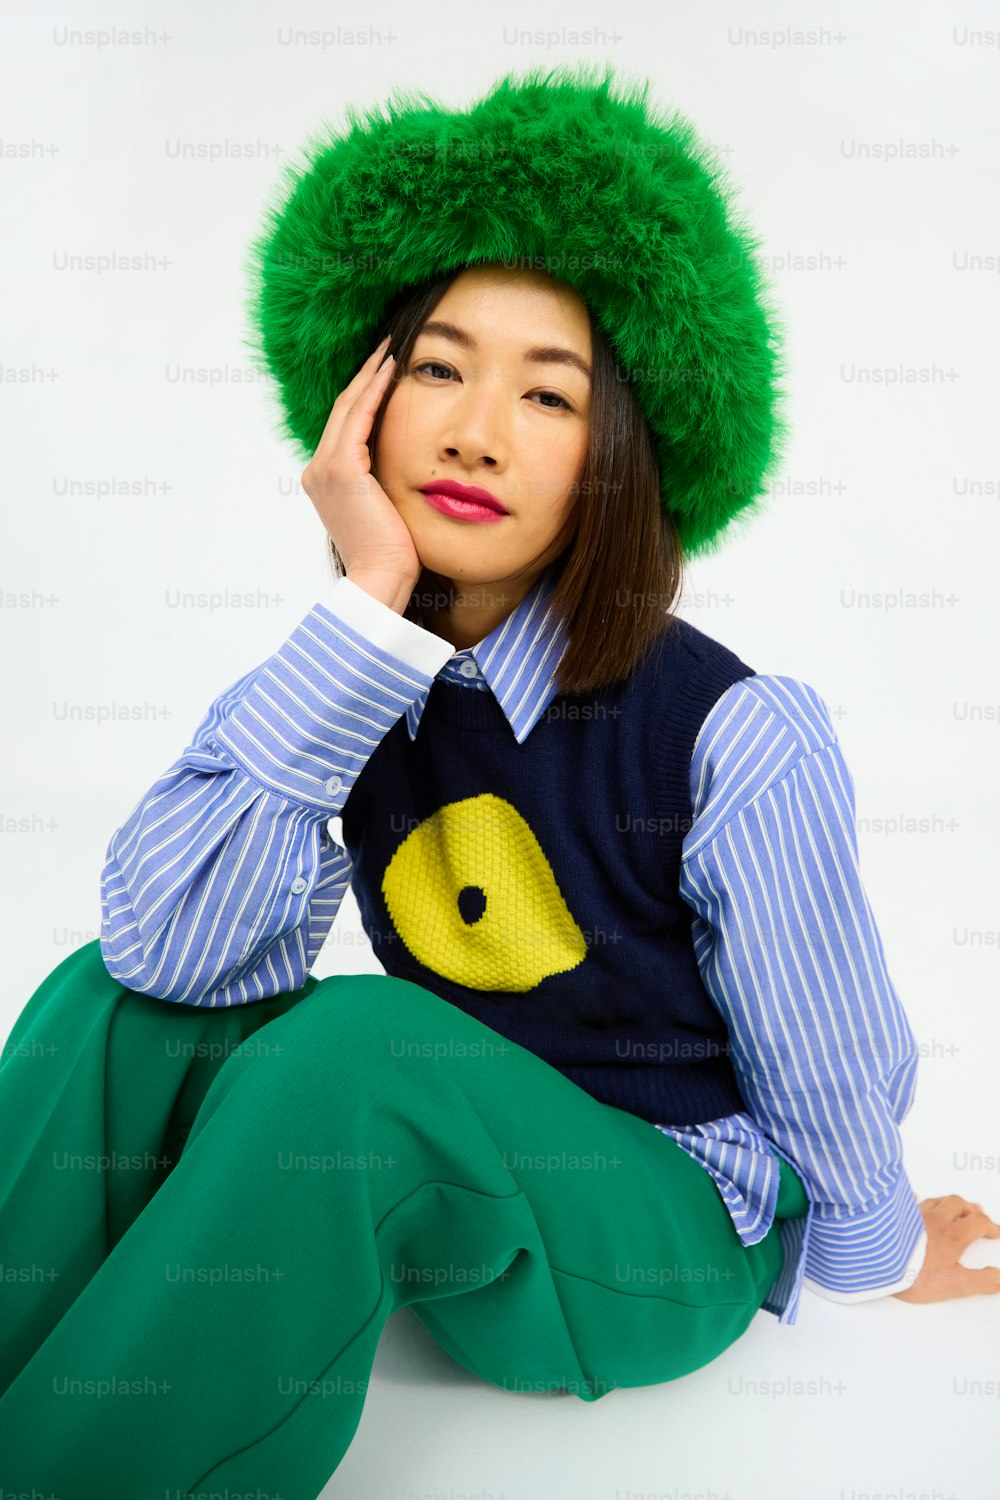 una donna che indossa un cappello verde e pantaloni verdi